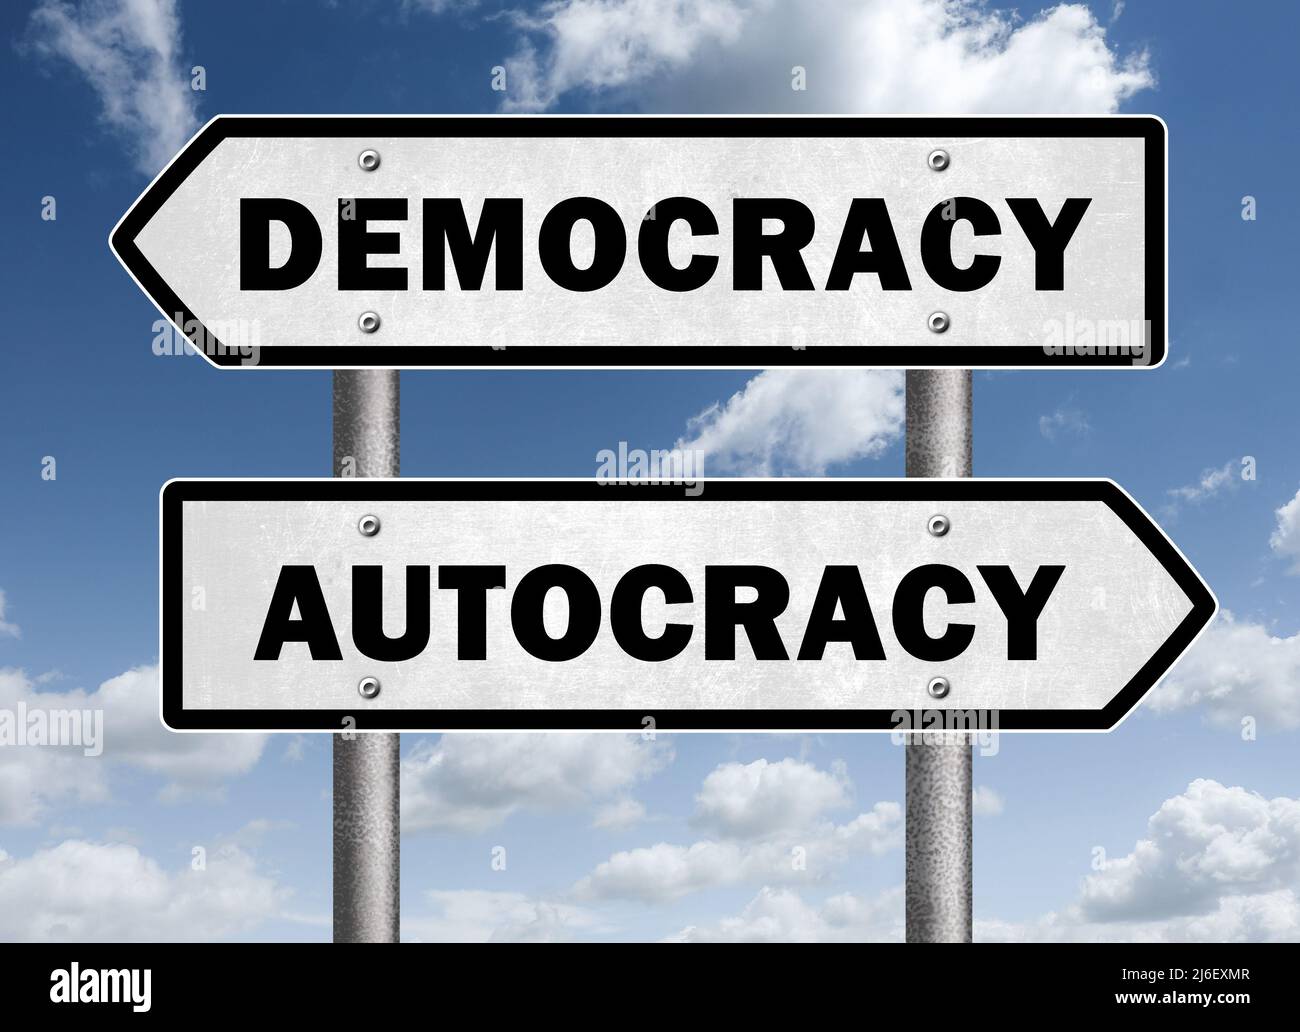 Democracy versus Autocracy Stock Photo